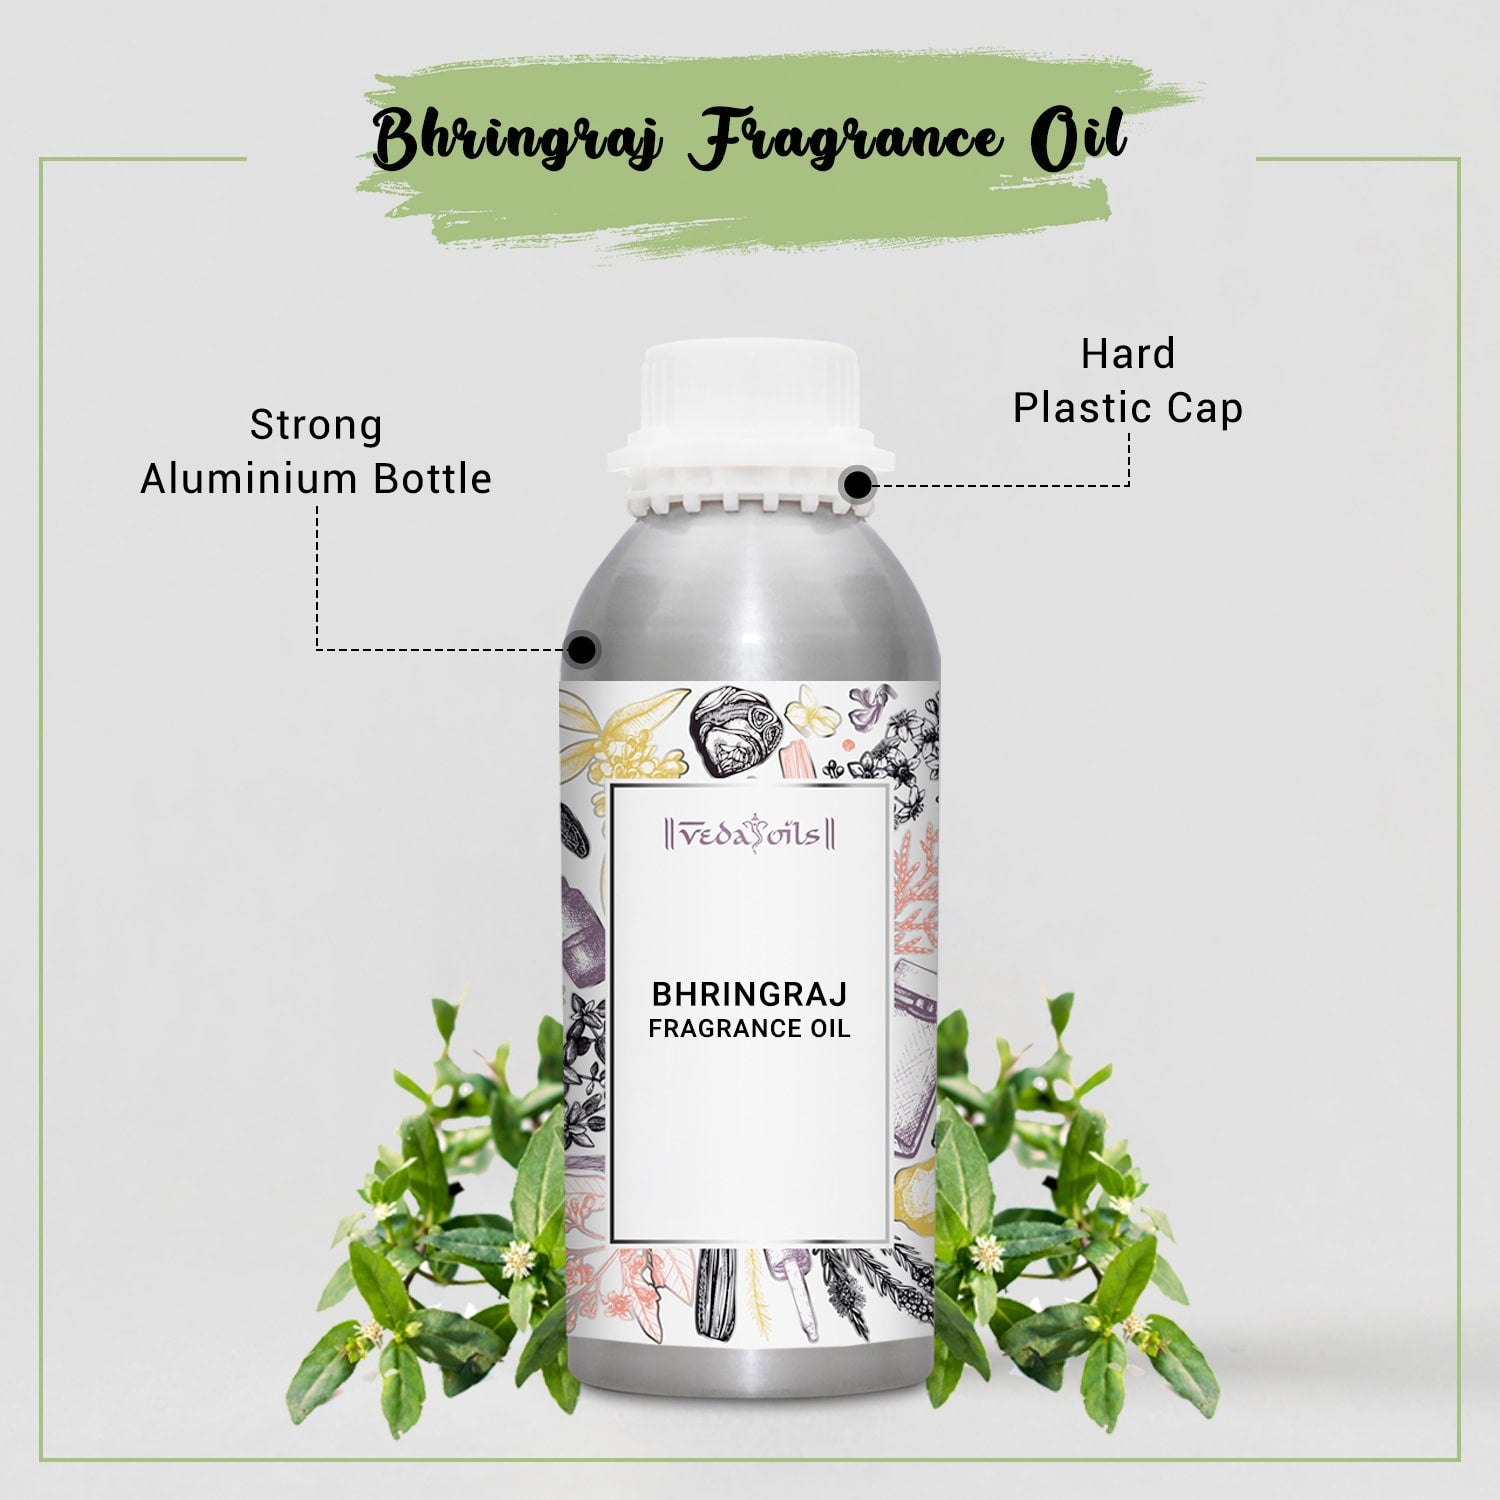 Bhringraj Fragrance Oil